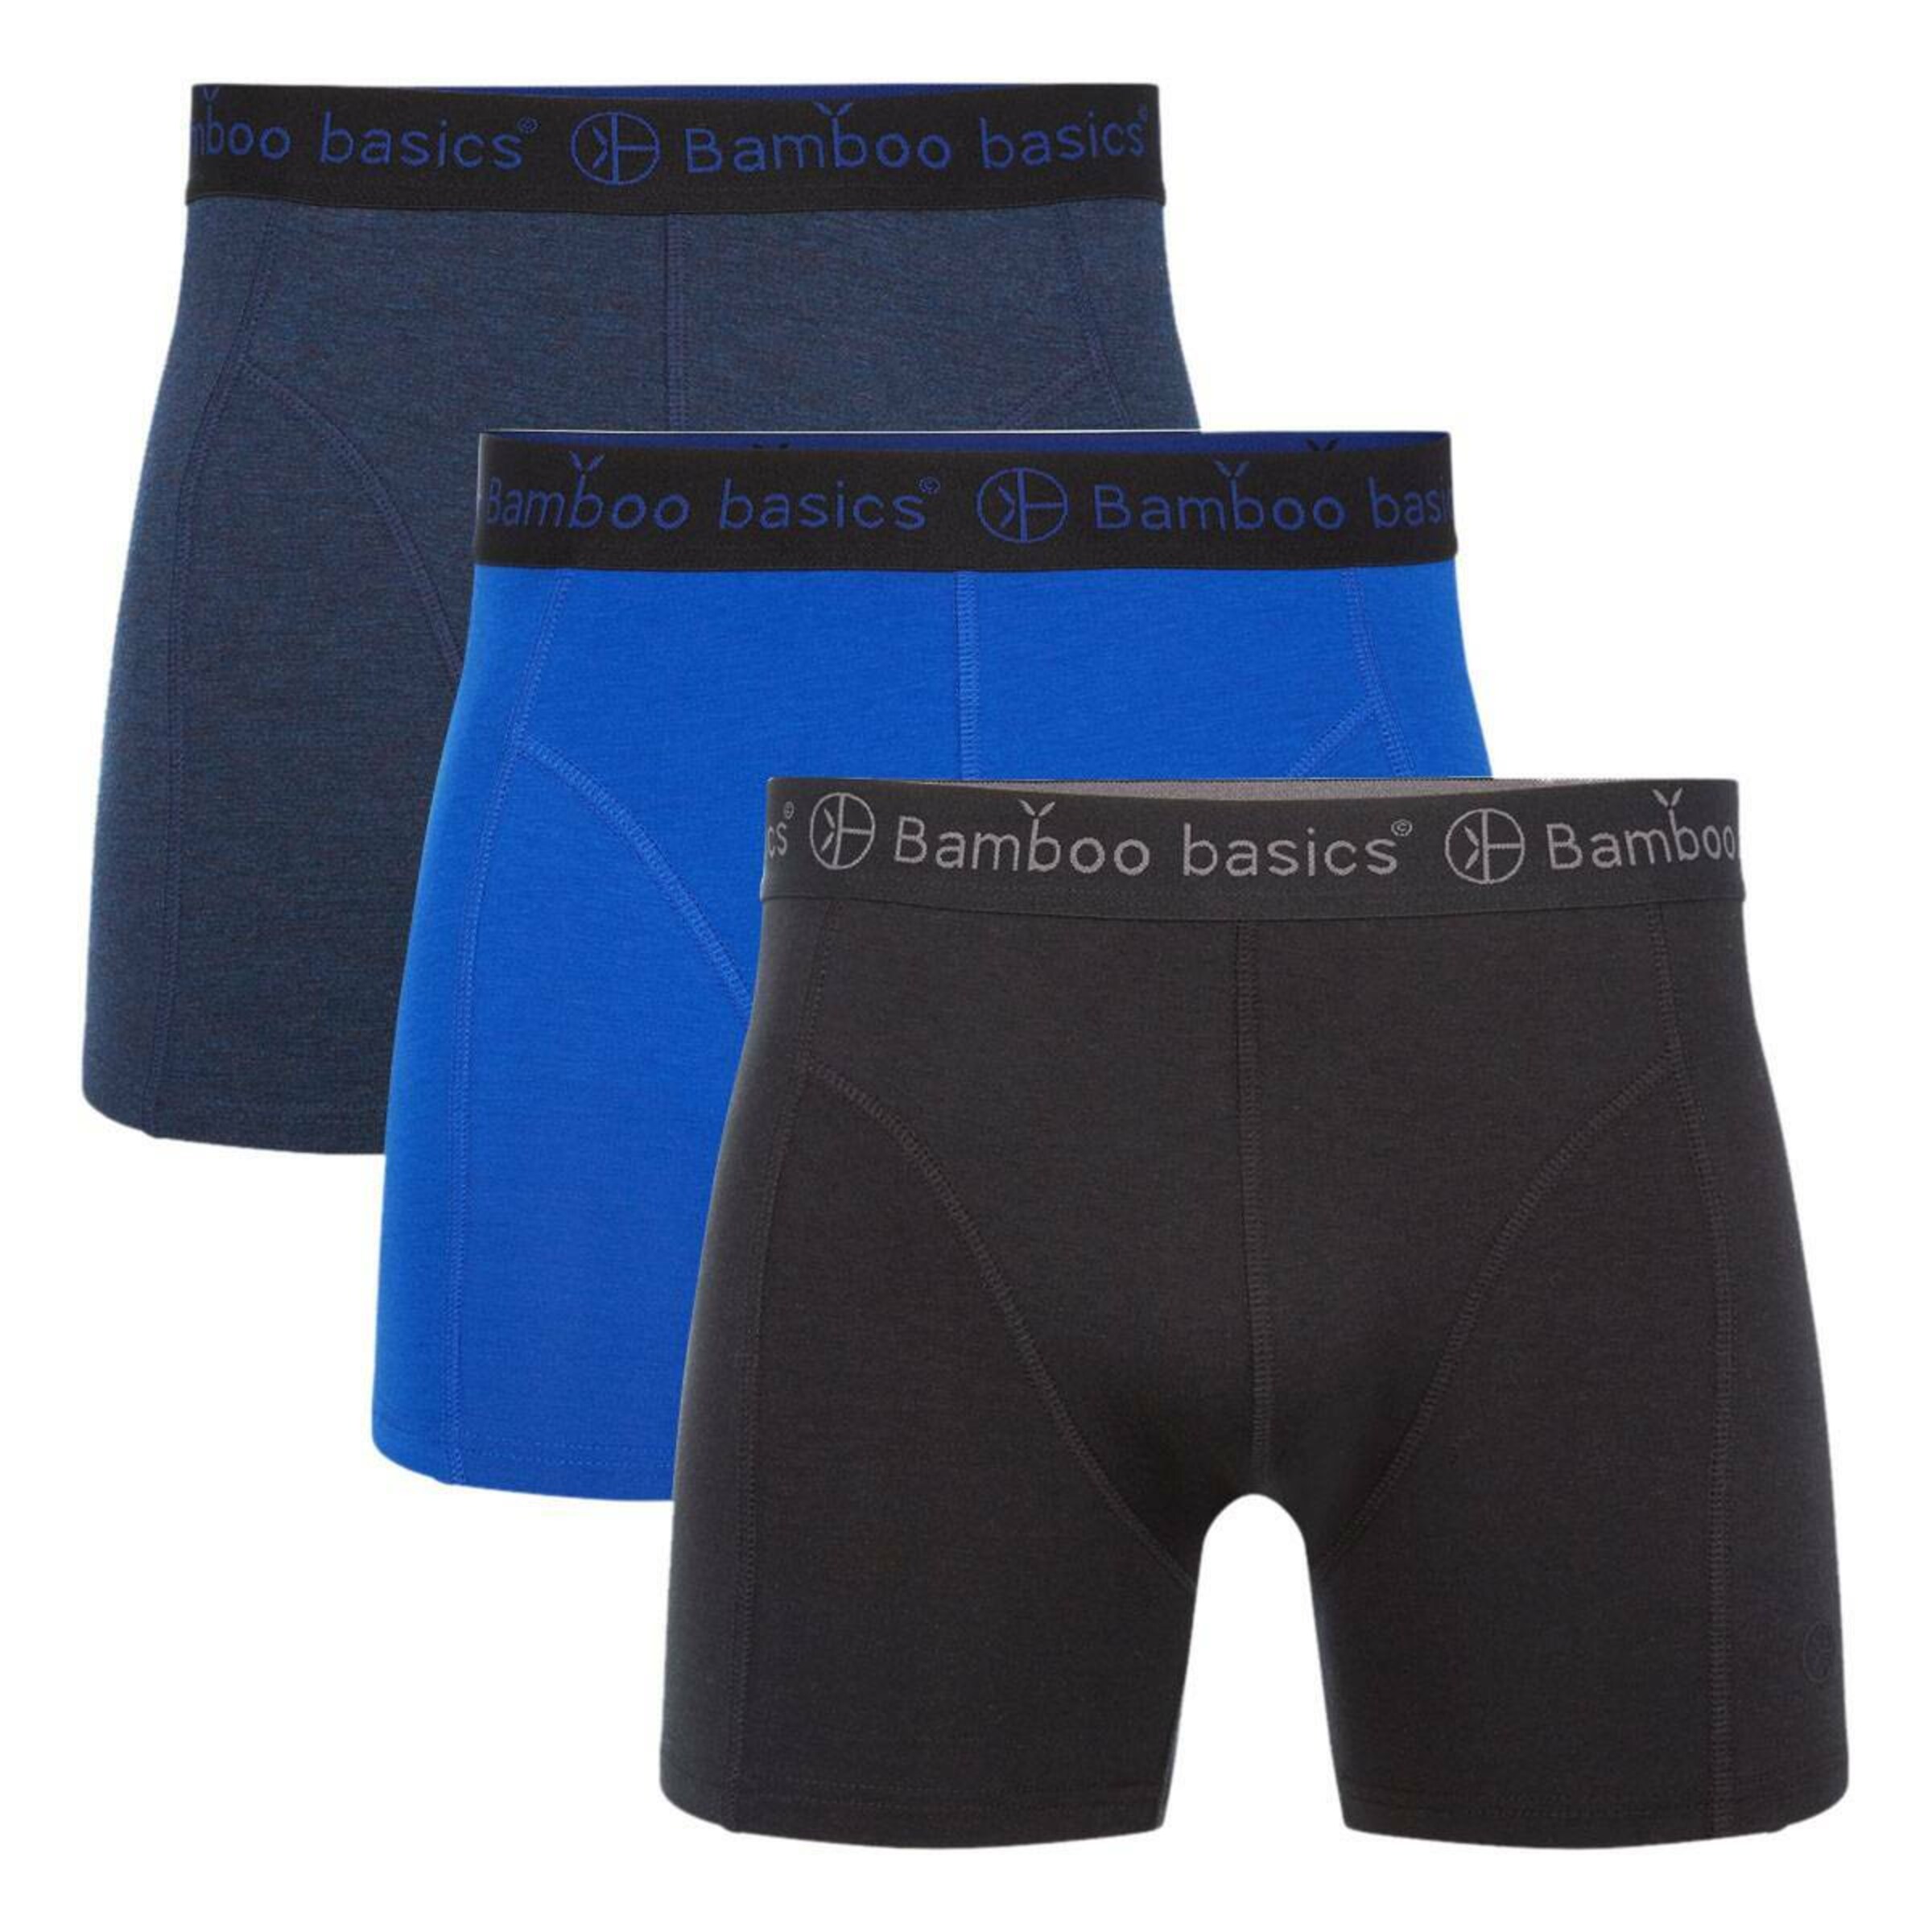 Sous-vêtements Boxers Bamboo basics en Bleu Foncé, Bleu, Noir, Gris Foncé 